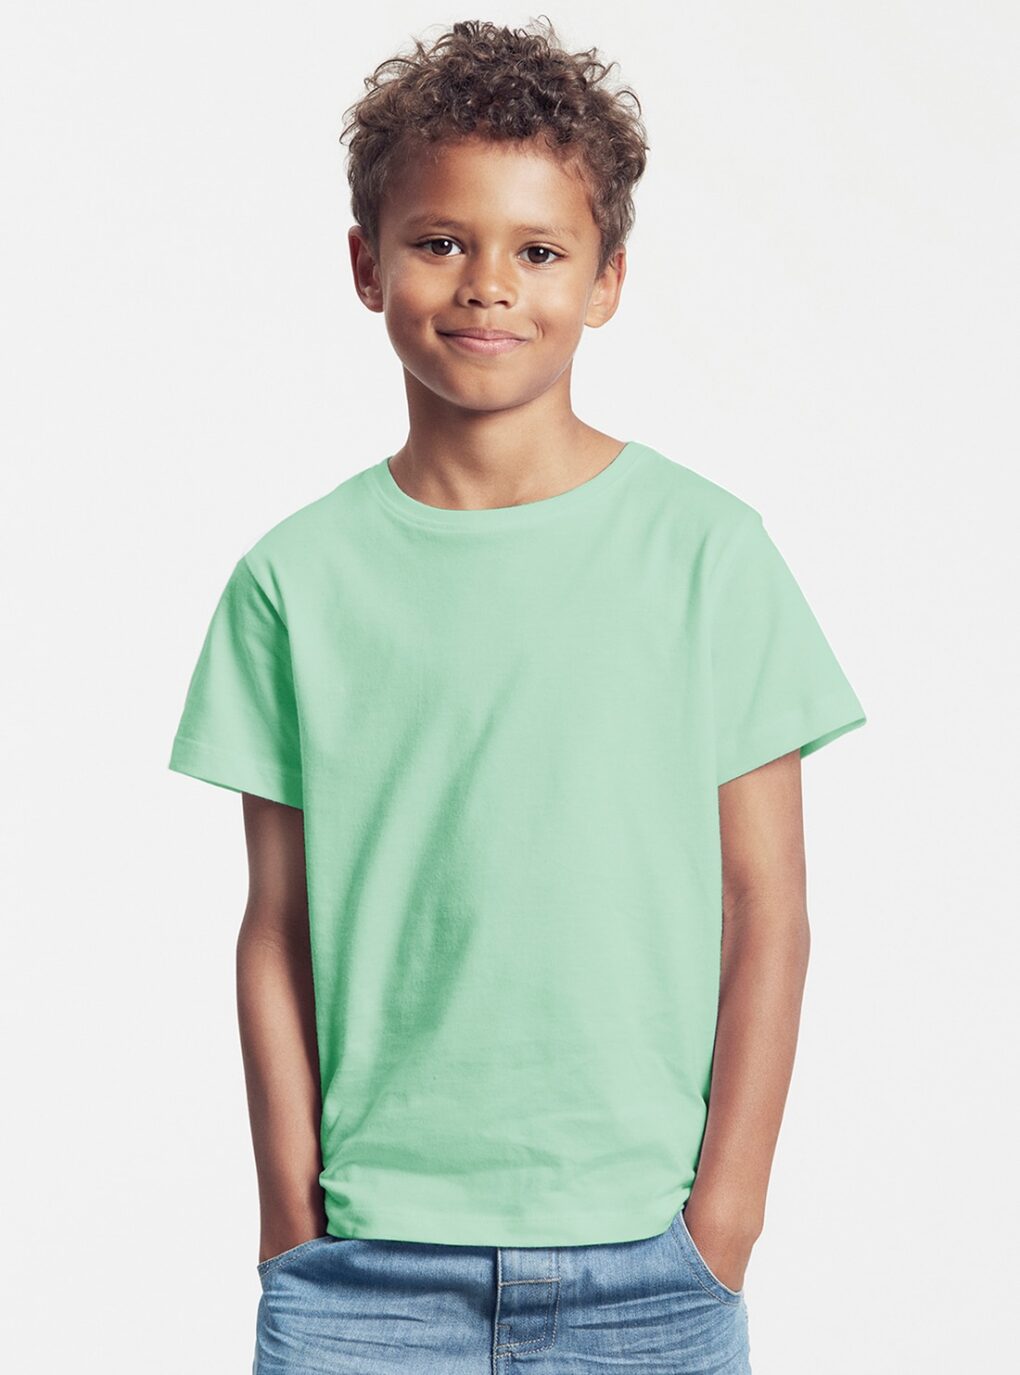 Biomode T-Shirt Peaces - Kinder unbedruckt